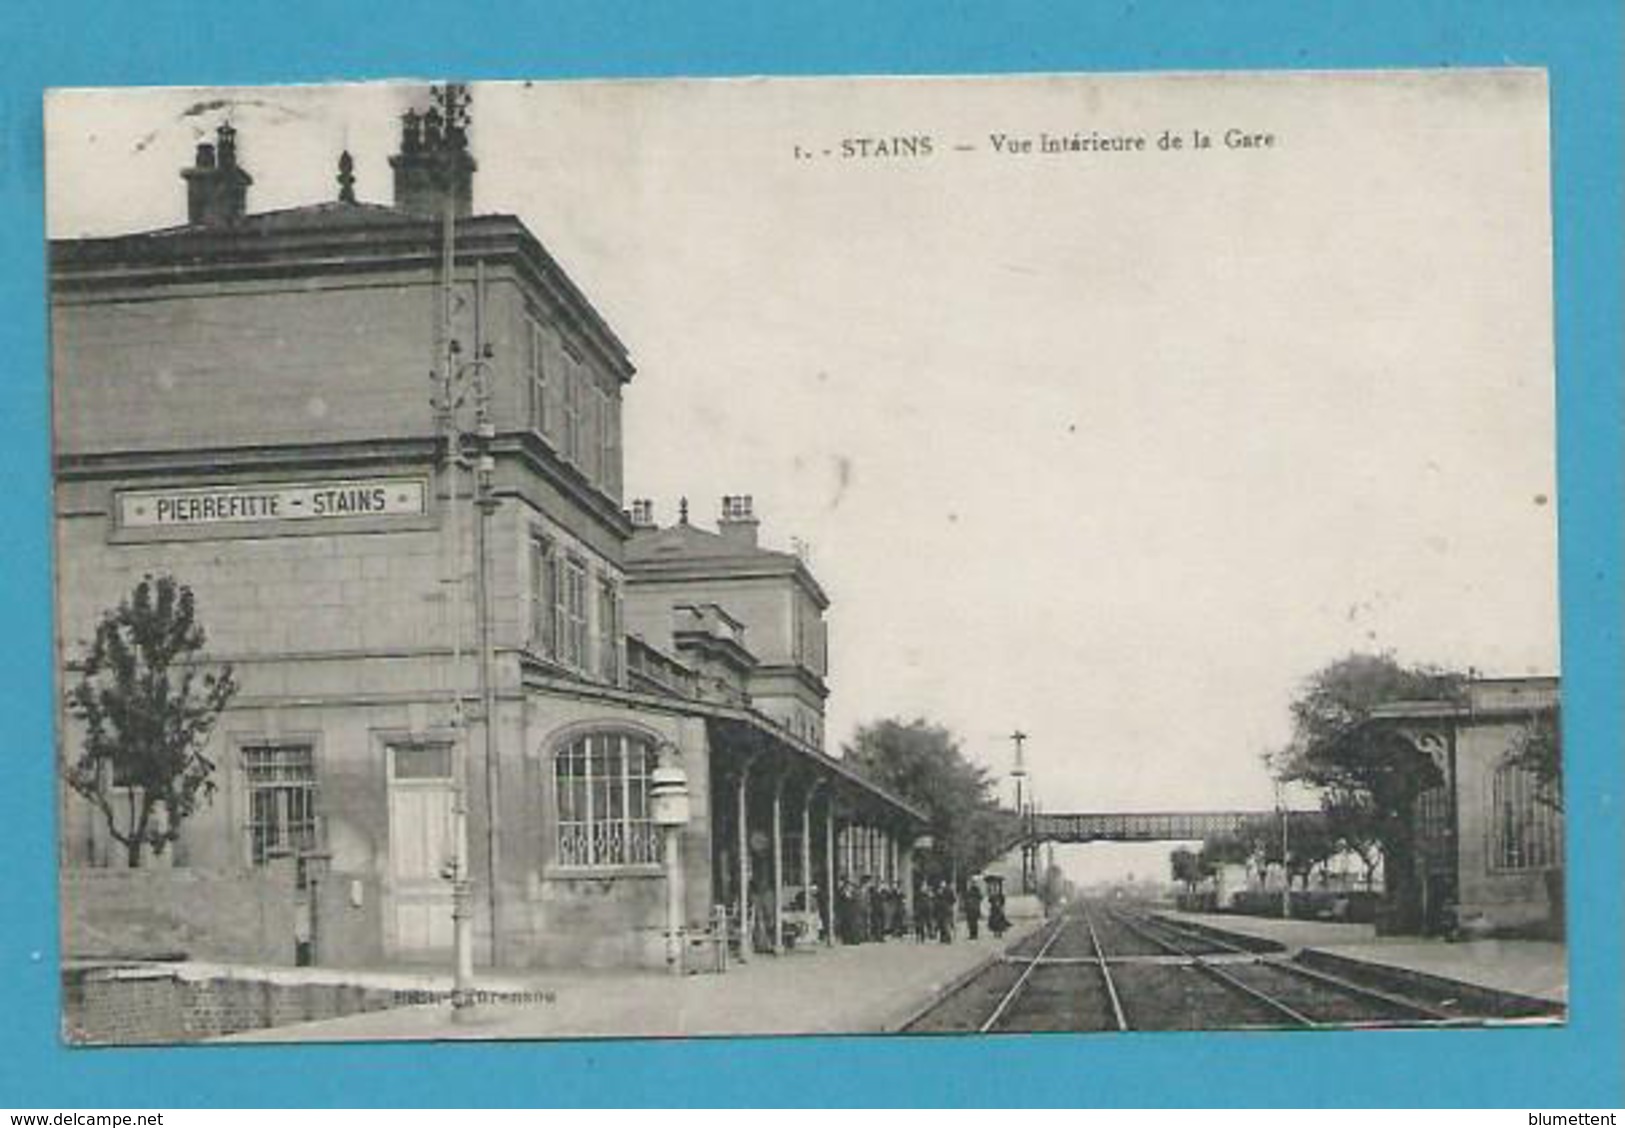 CPA 1 - Chemin De Fer - Vue Intérieure De La Gare PIERREFITTE - STAINS 93 - Stains